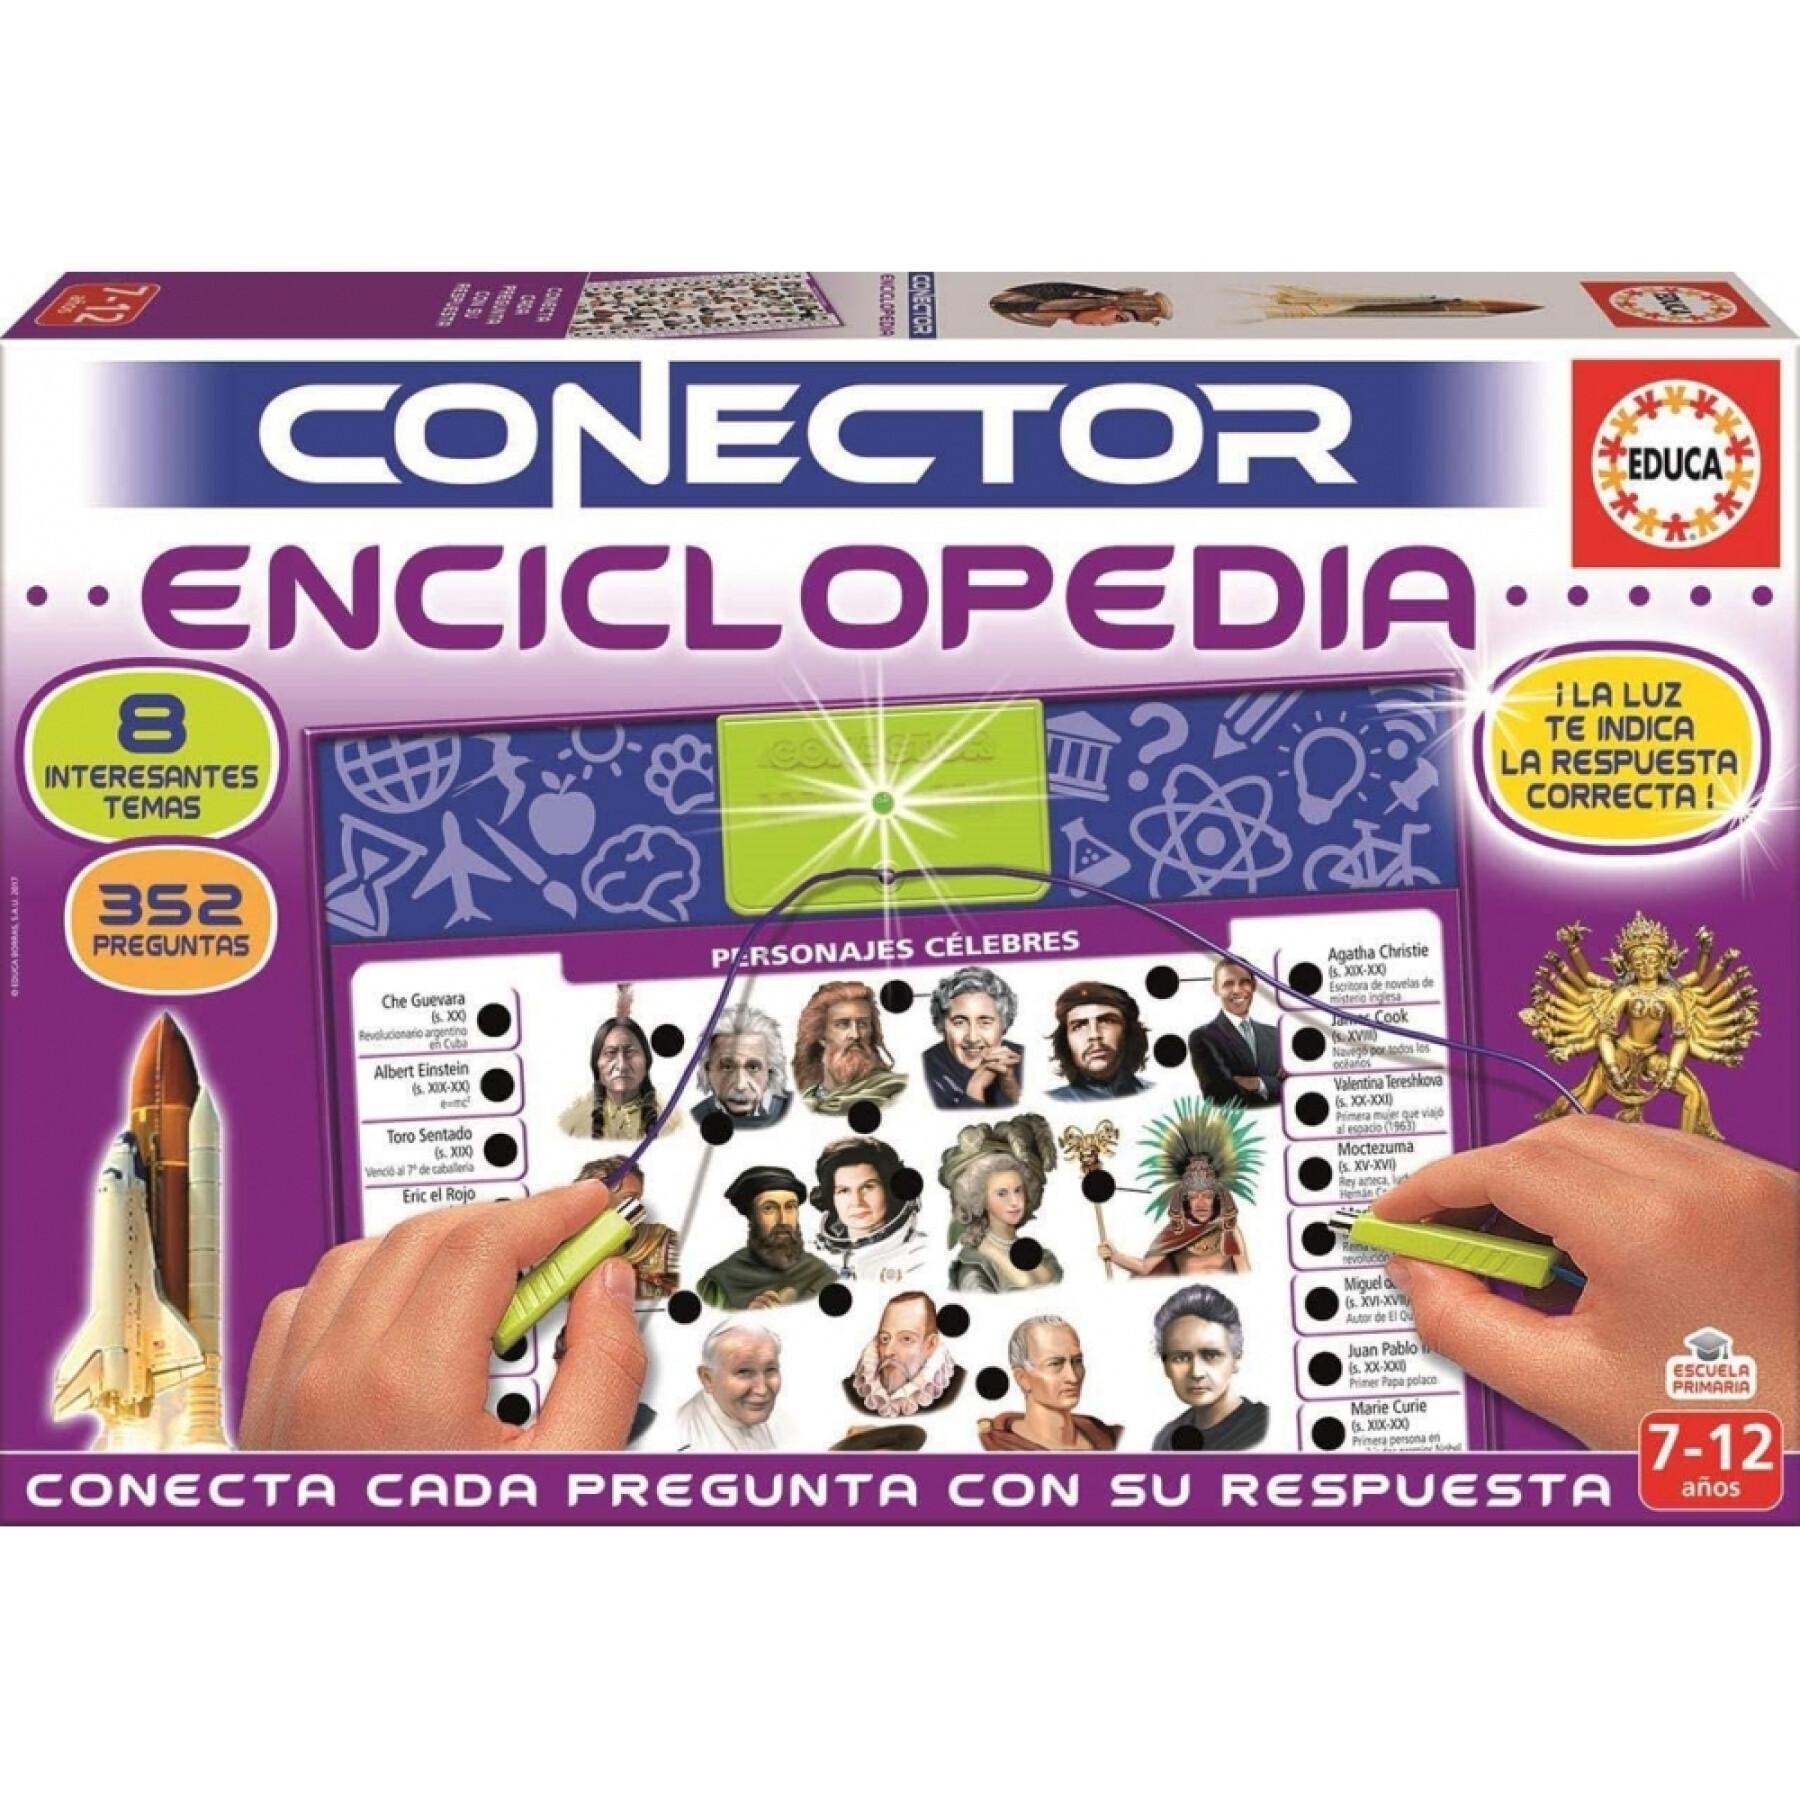 Enciclopedia educativa per tablet Educa Conector